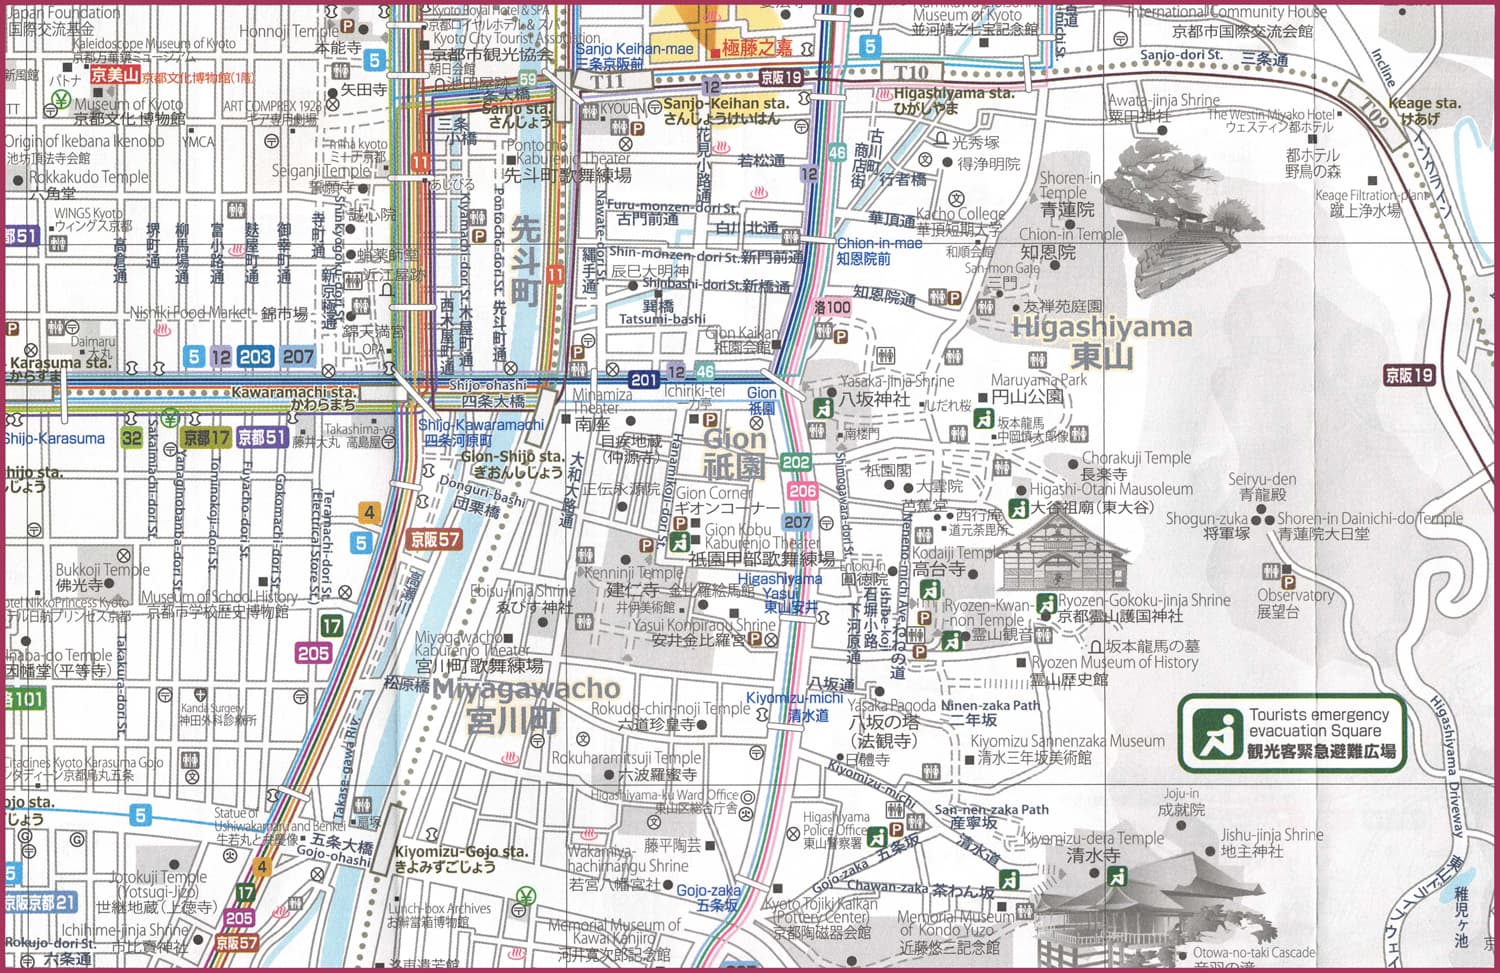 祇園・清水エリアの観光マップ